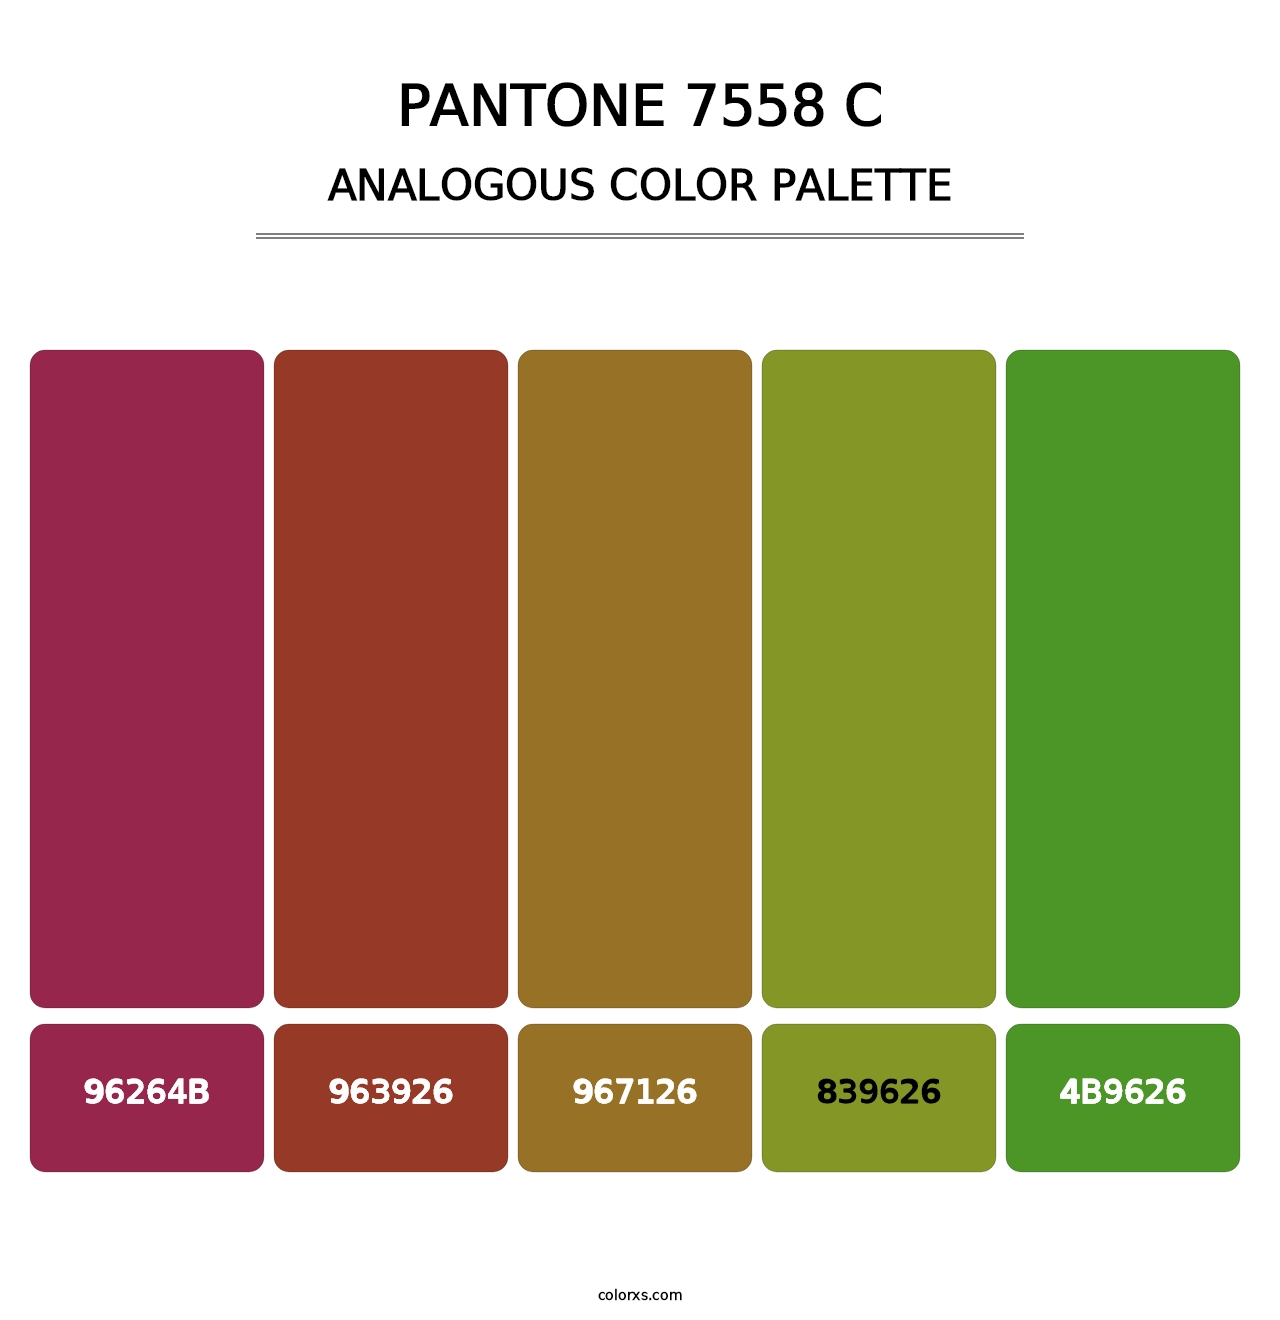 PANTONE 7558 C - Analogous Color Palette